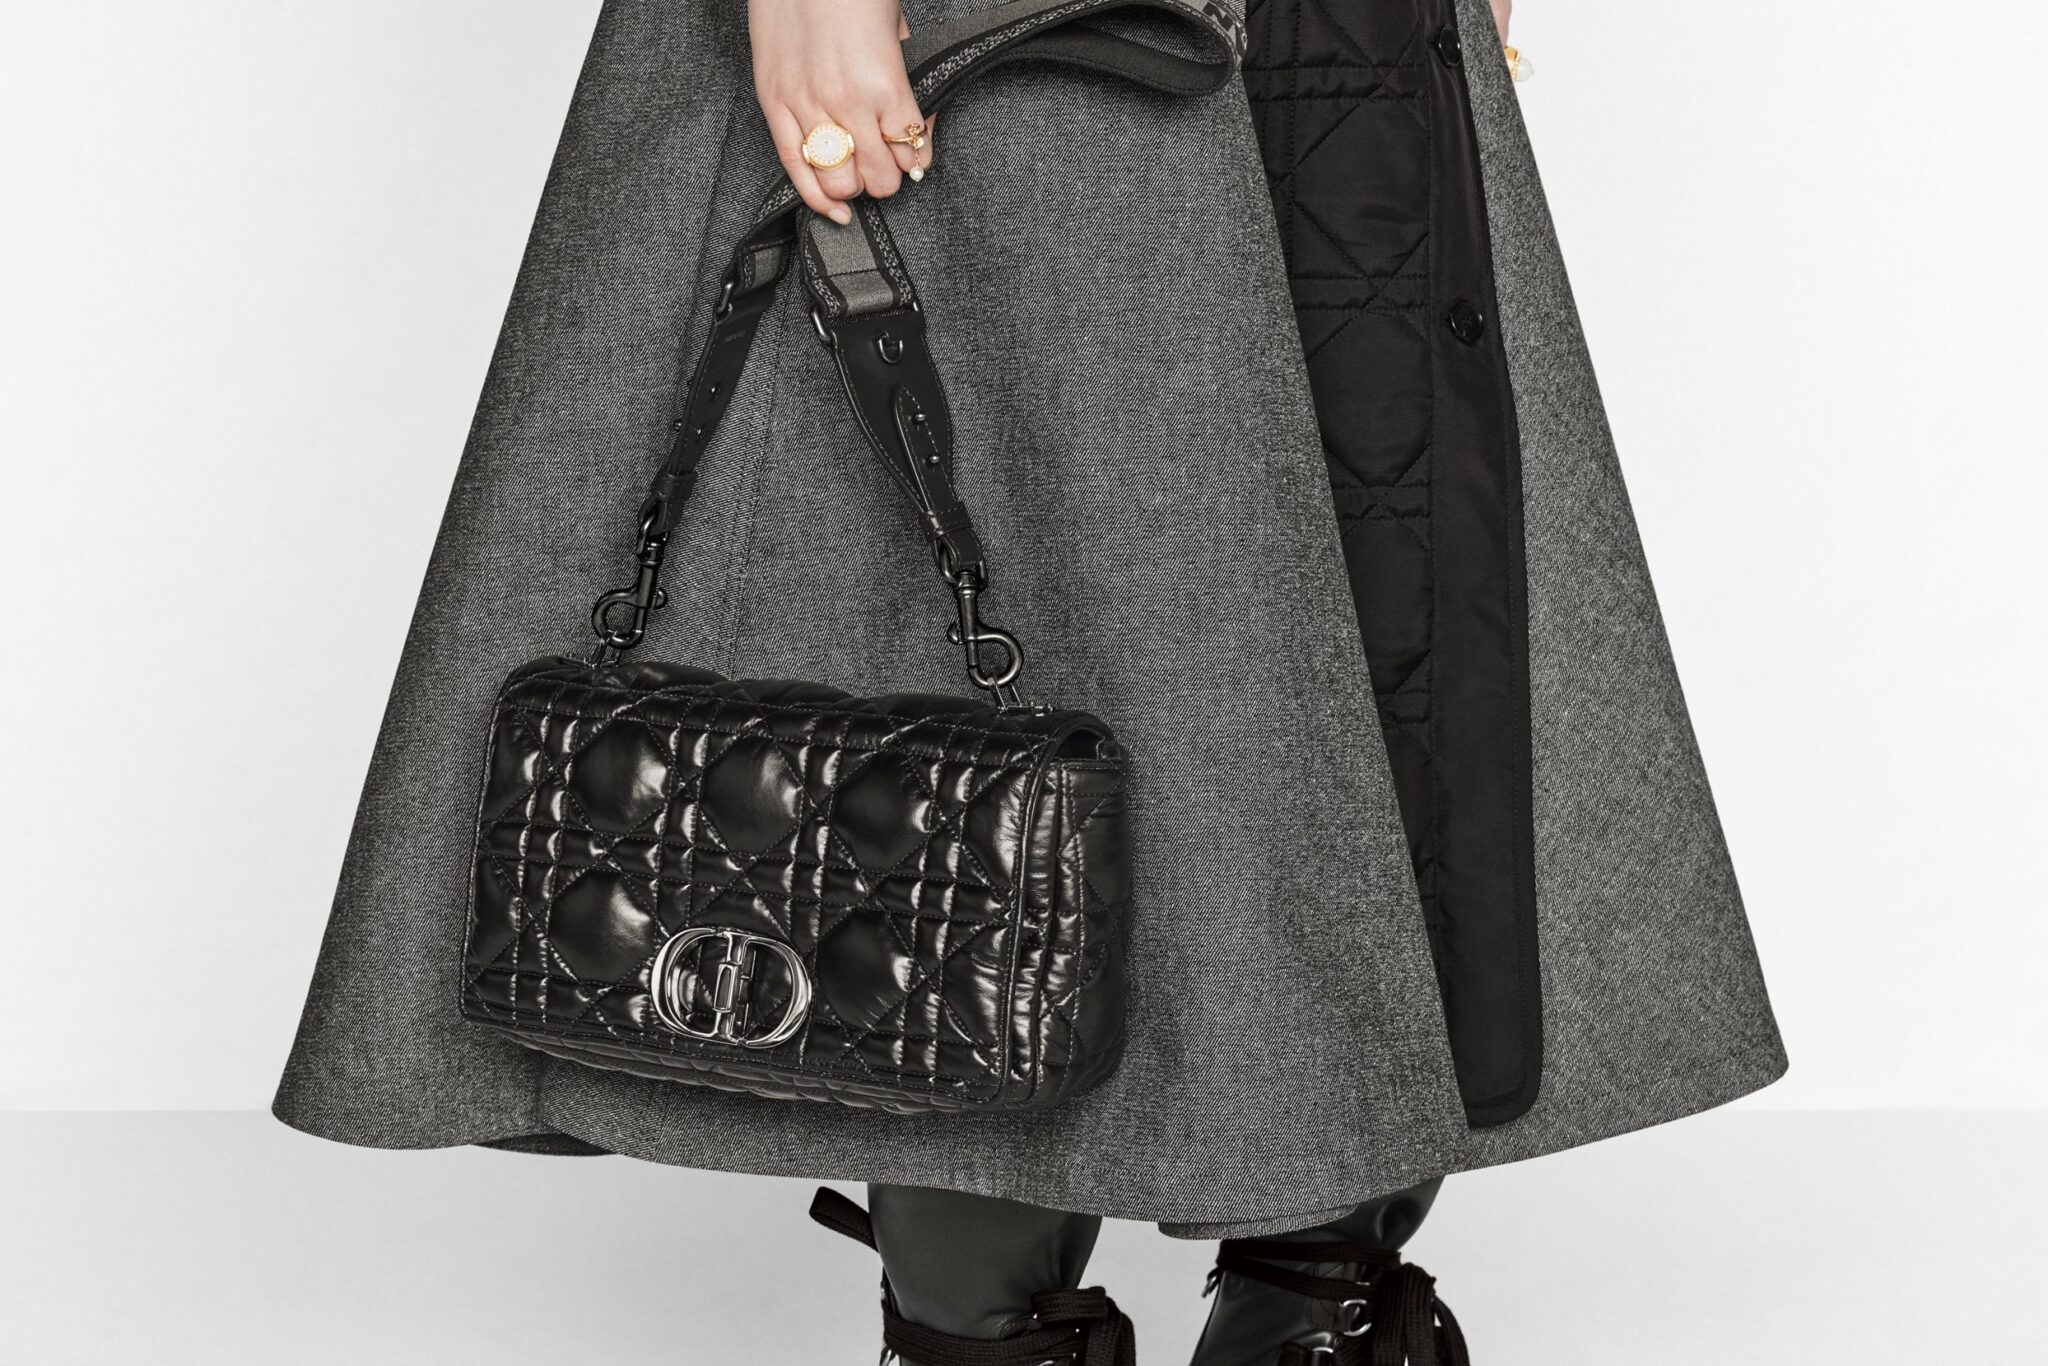 Dior Autumn Winter Bag Collection